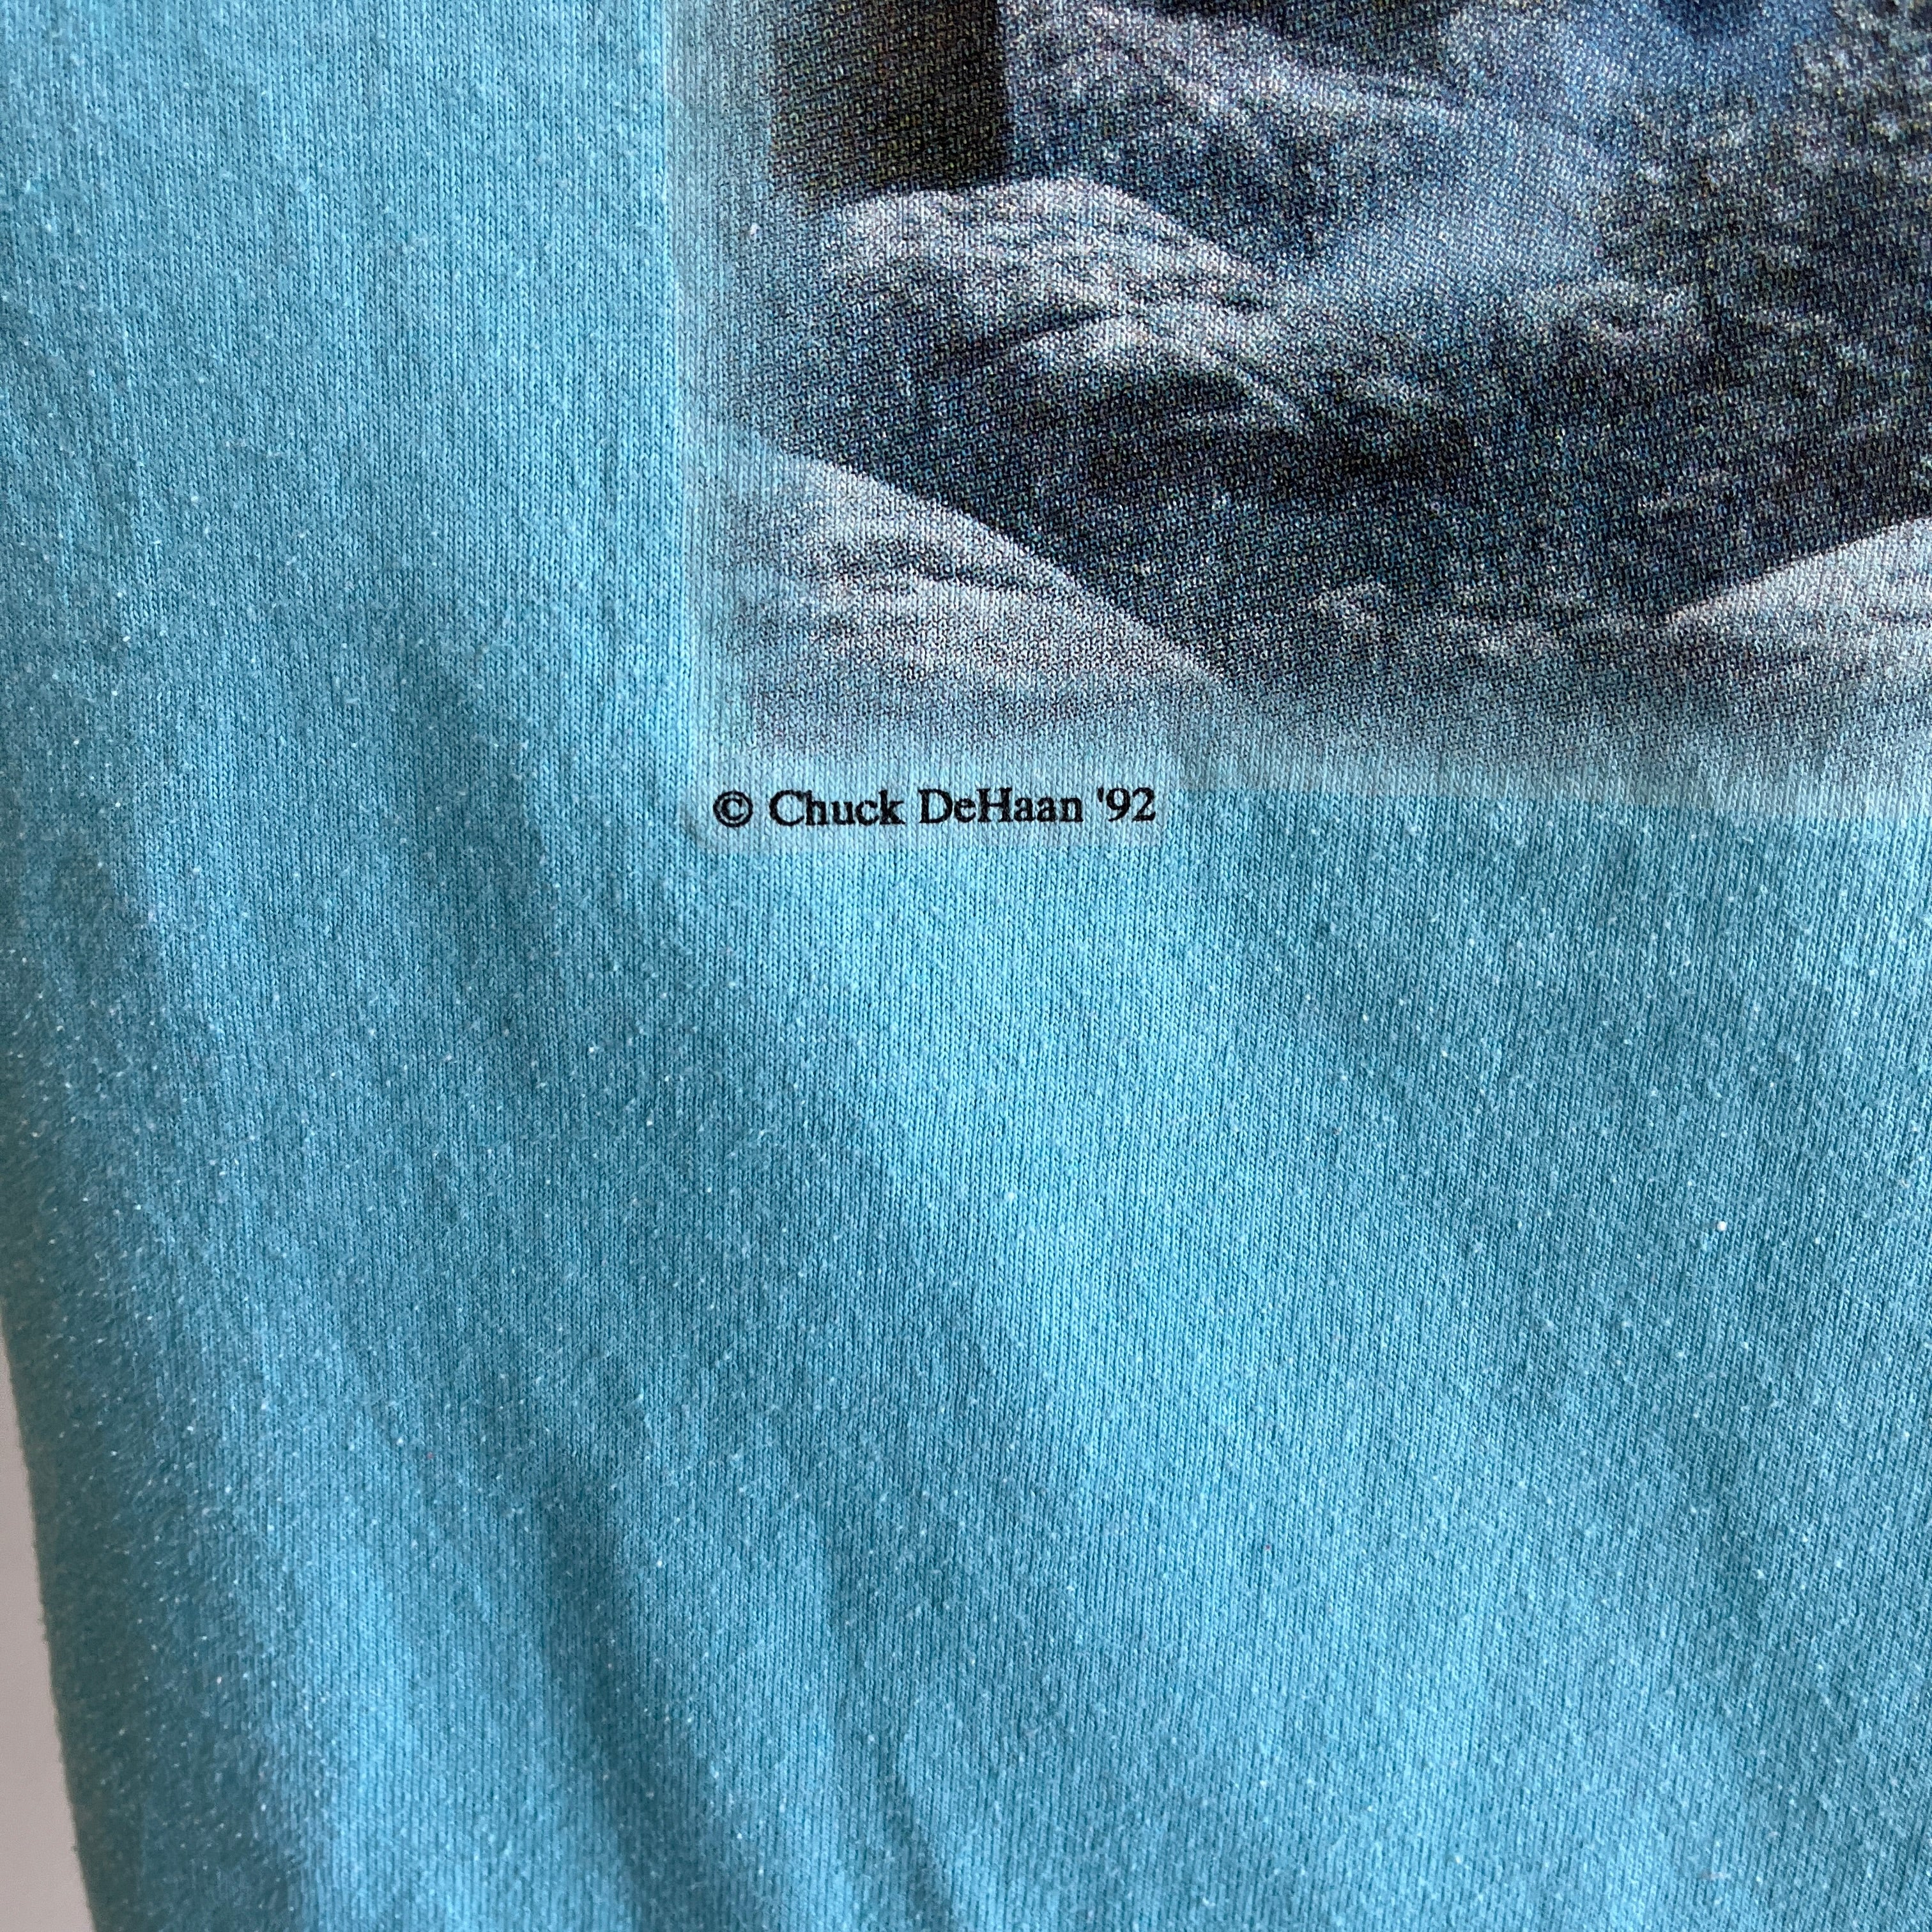 T-shirt Cheval 1992 par Screen Stars Best